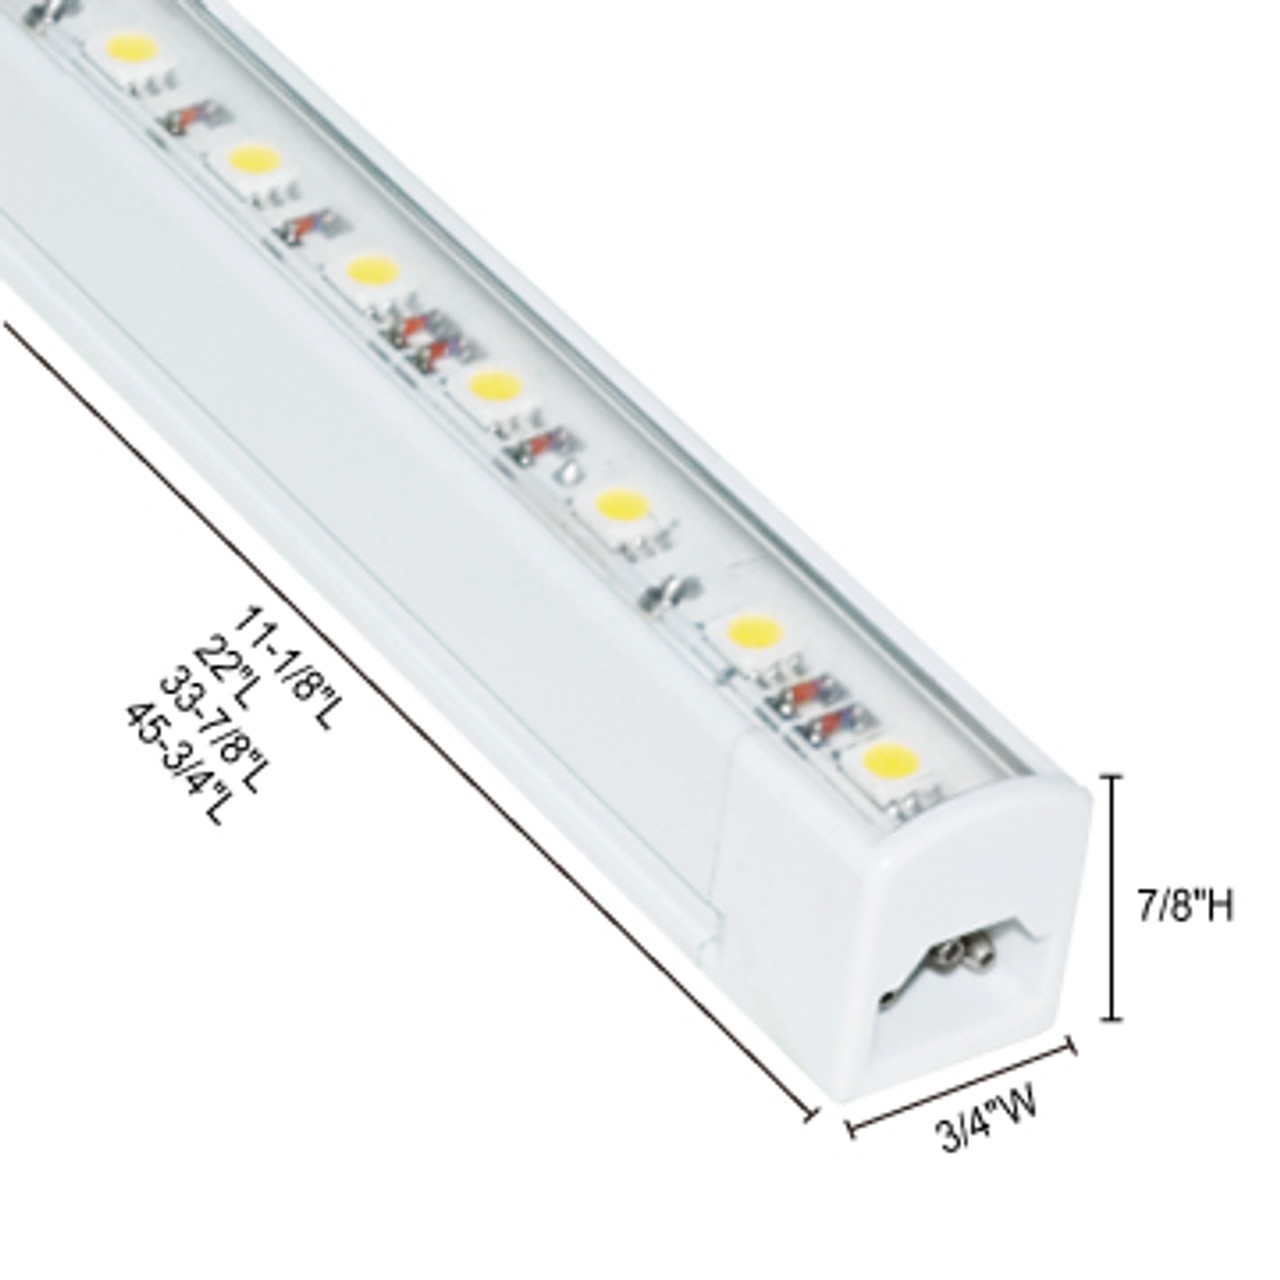 JESCO Lighting S401-12/60 S401 12?ö LED Sleek Plus S401 Linkable (No switch), 6000K, White